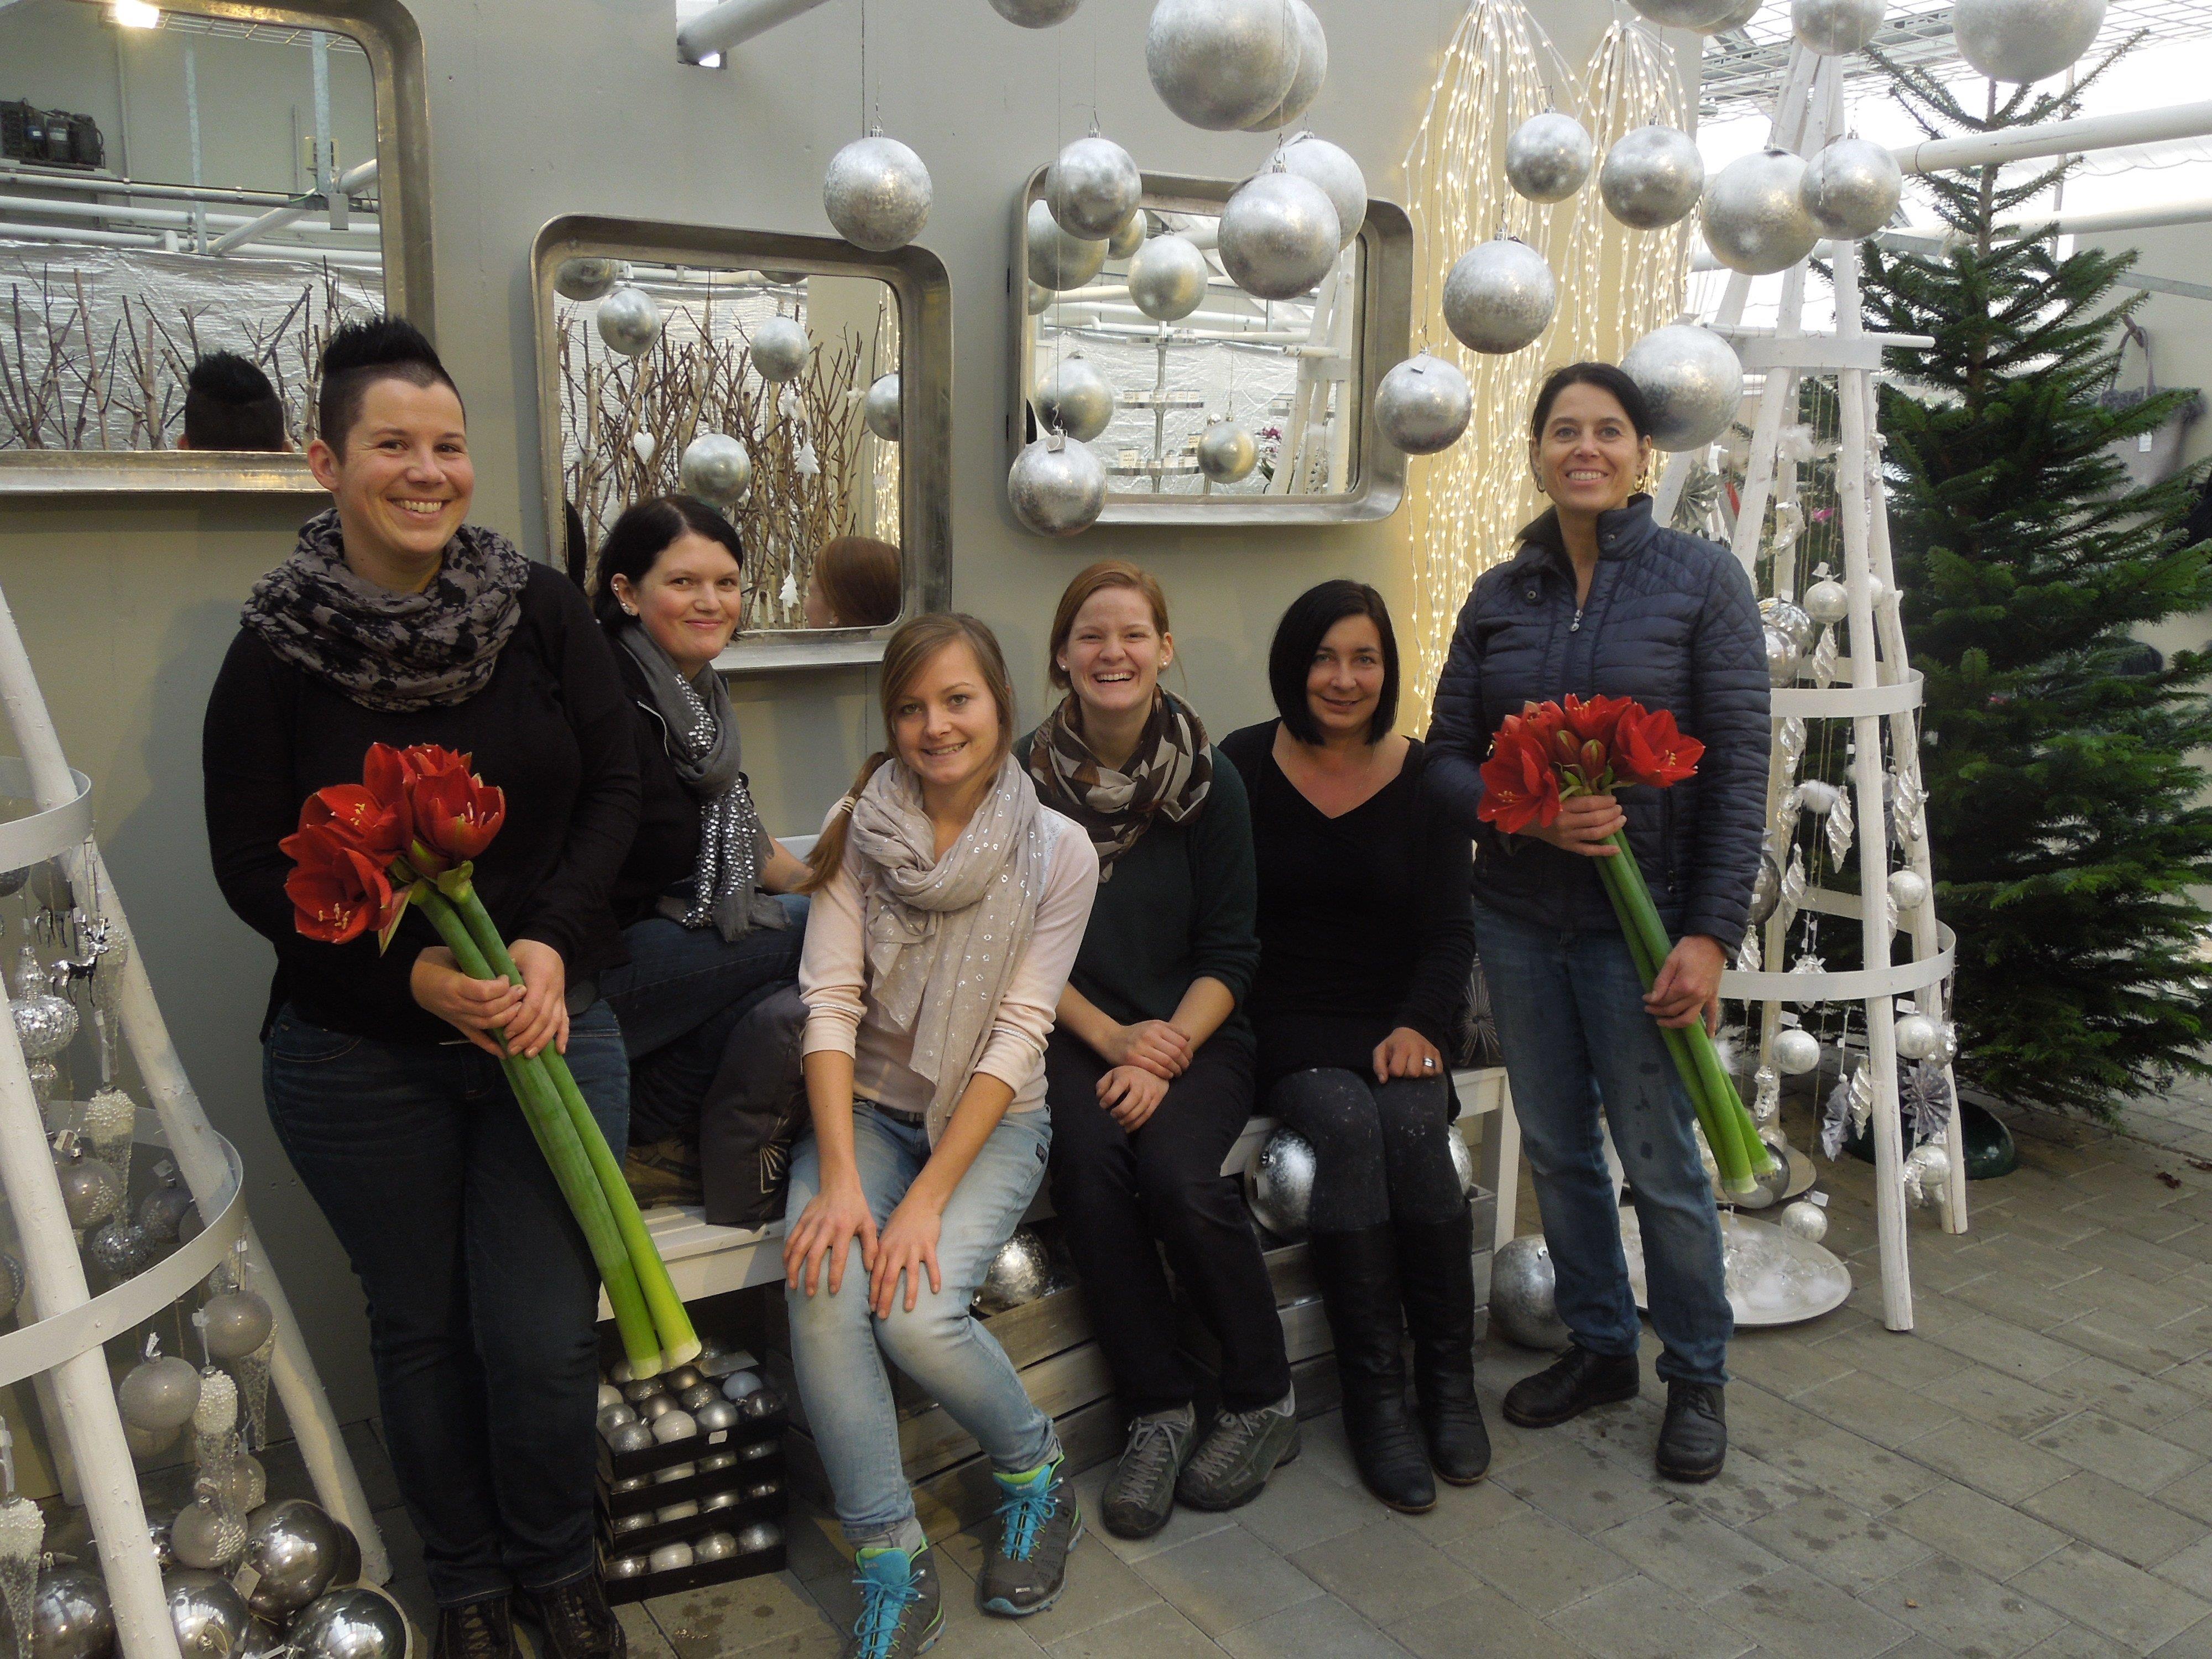 Das Team von Blume Huschle ist bereit für die große Adventausstellung am kommenden Wochenende und freut sich auf viele Besucher.